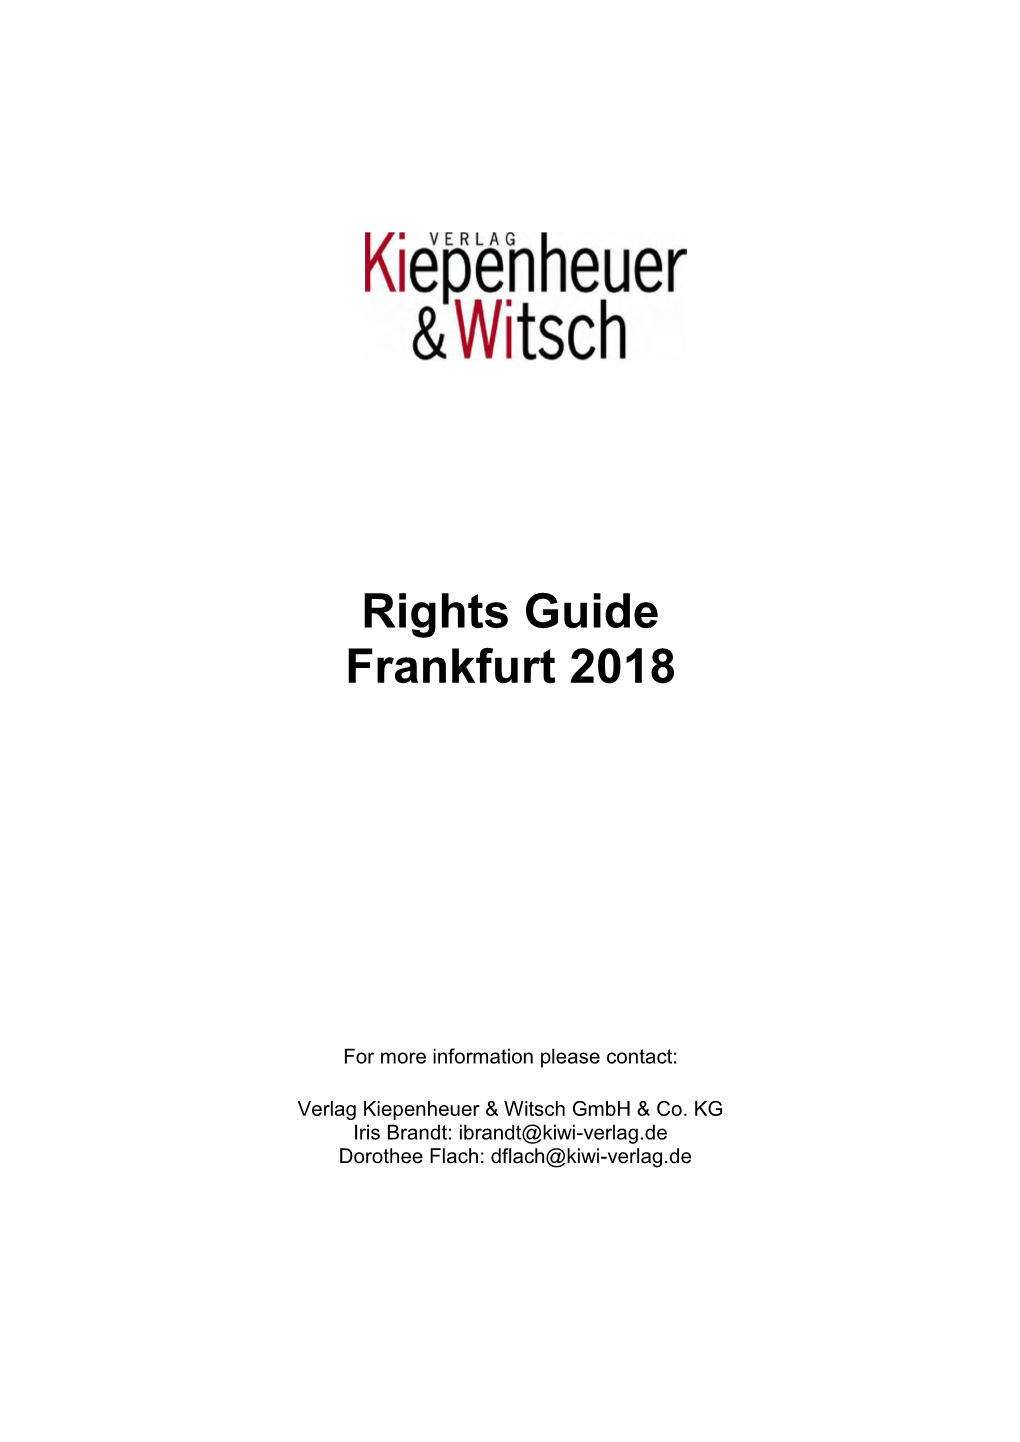 Rights Guide Frankfurt 2018